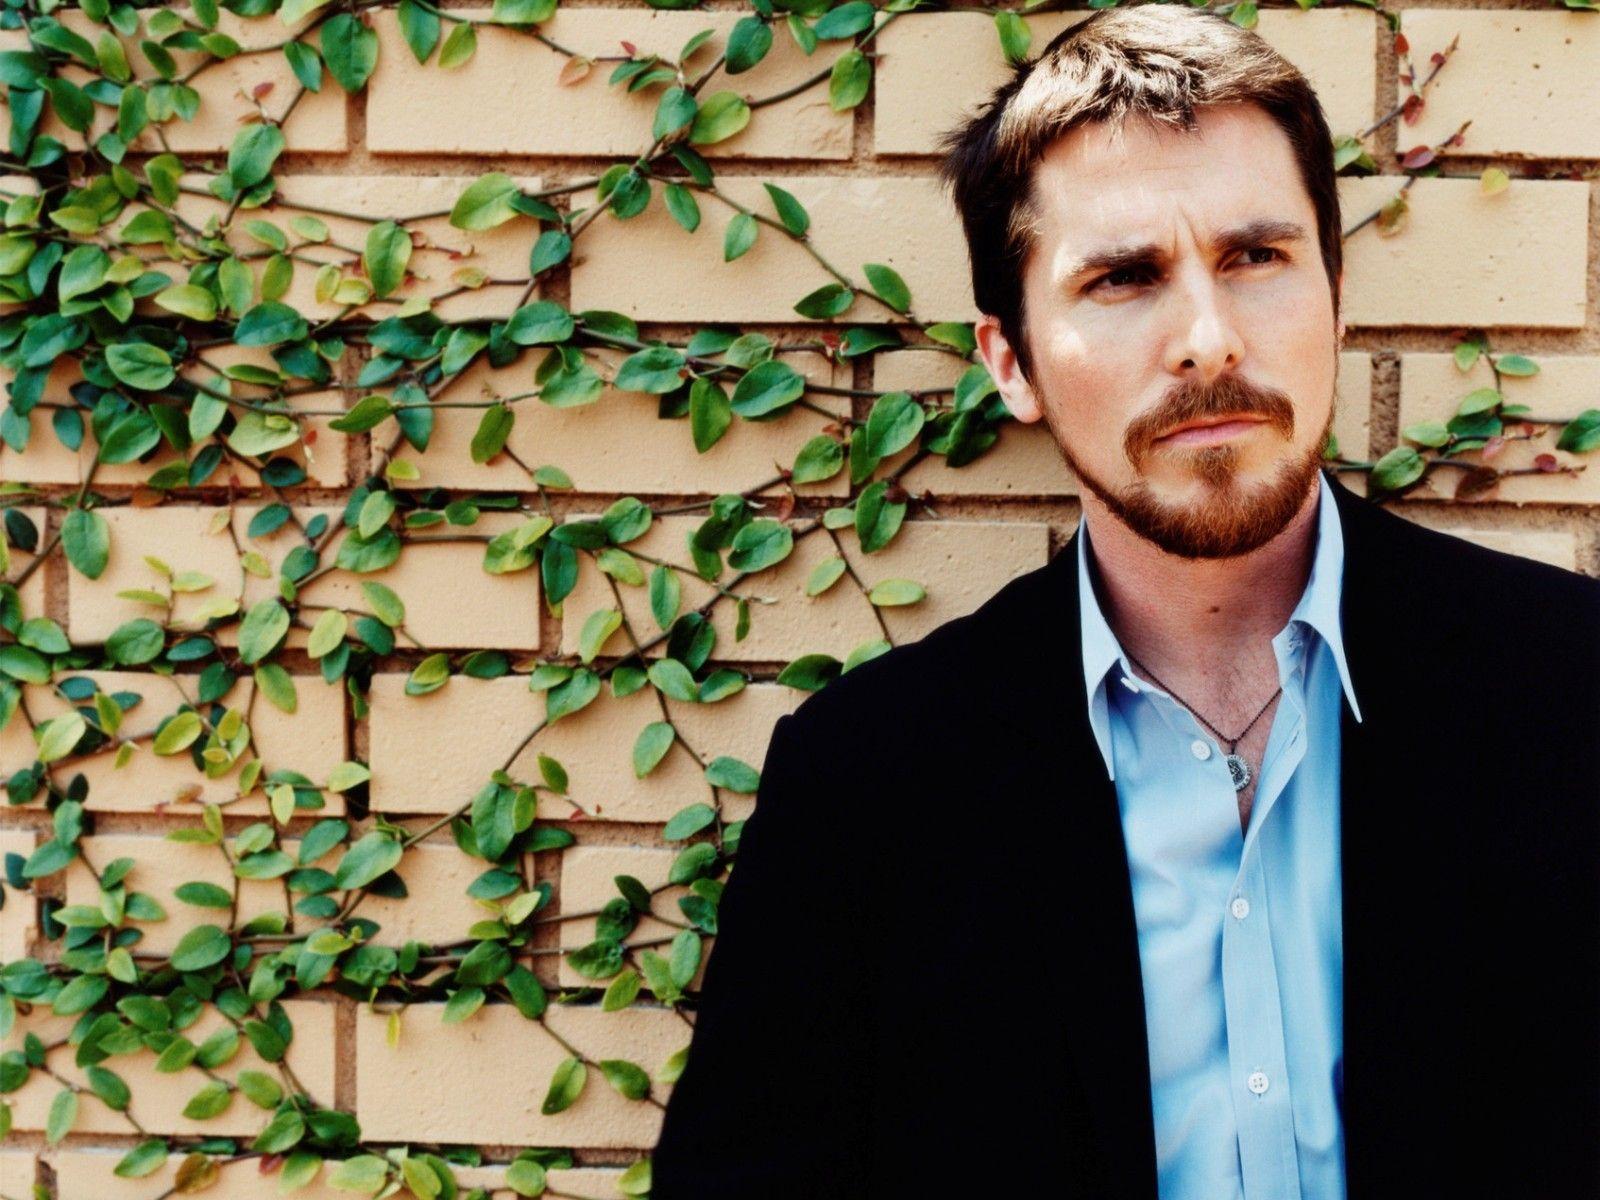 کریستین بیل (Christian Bale)